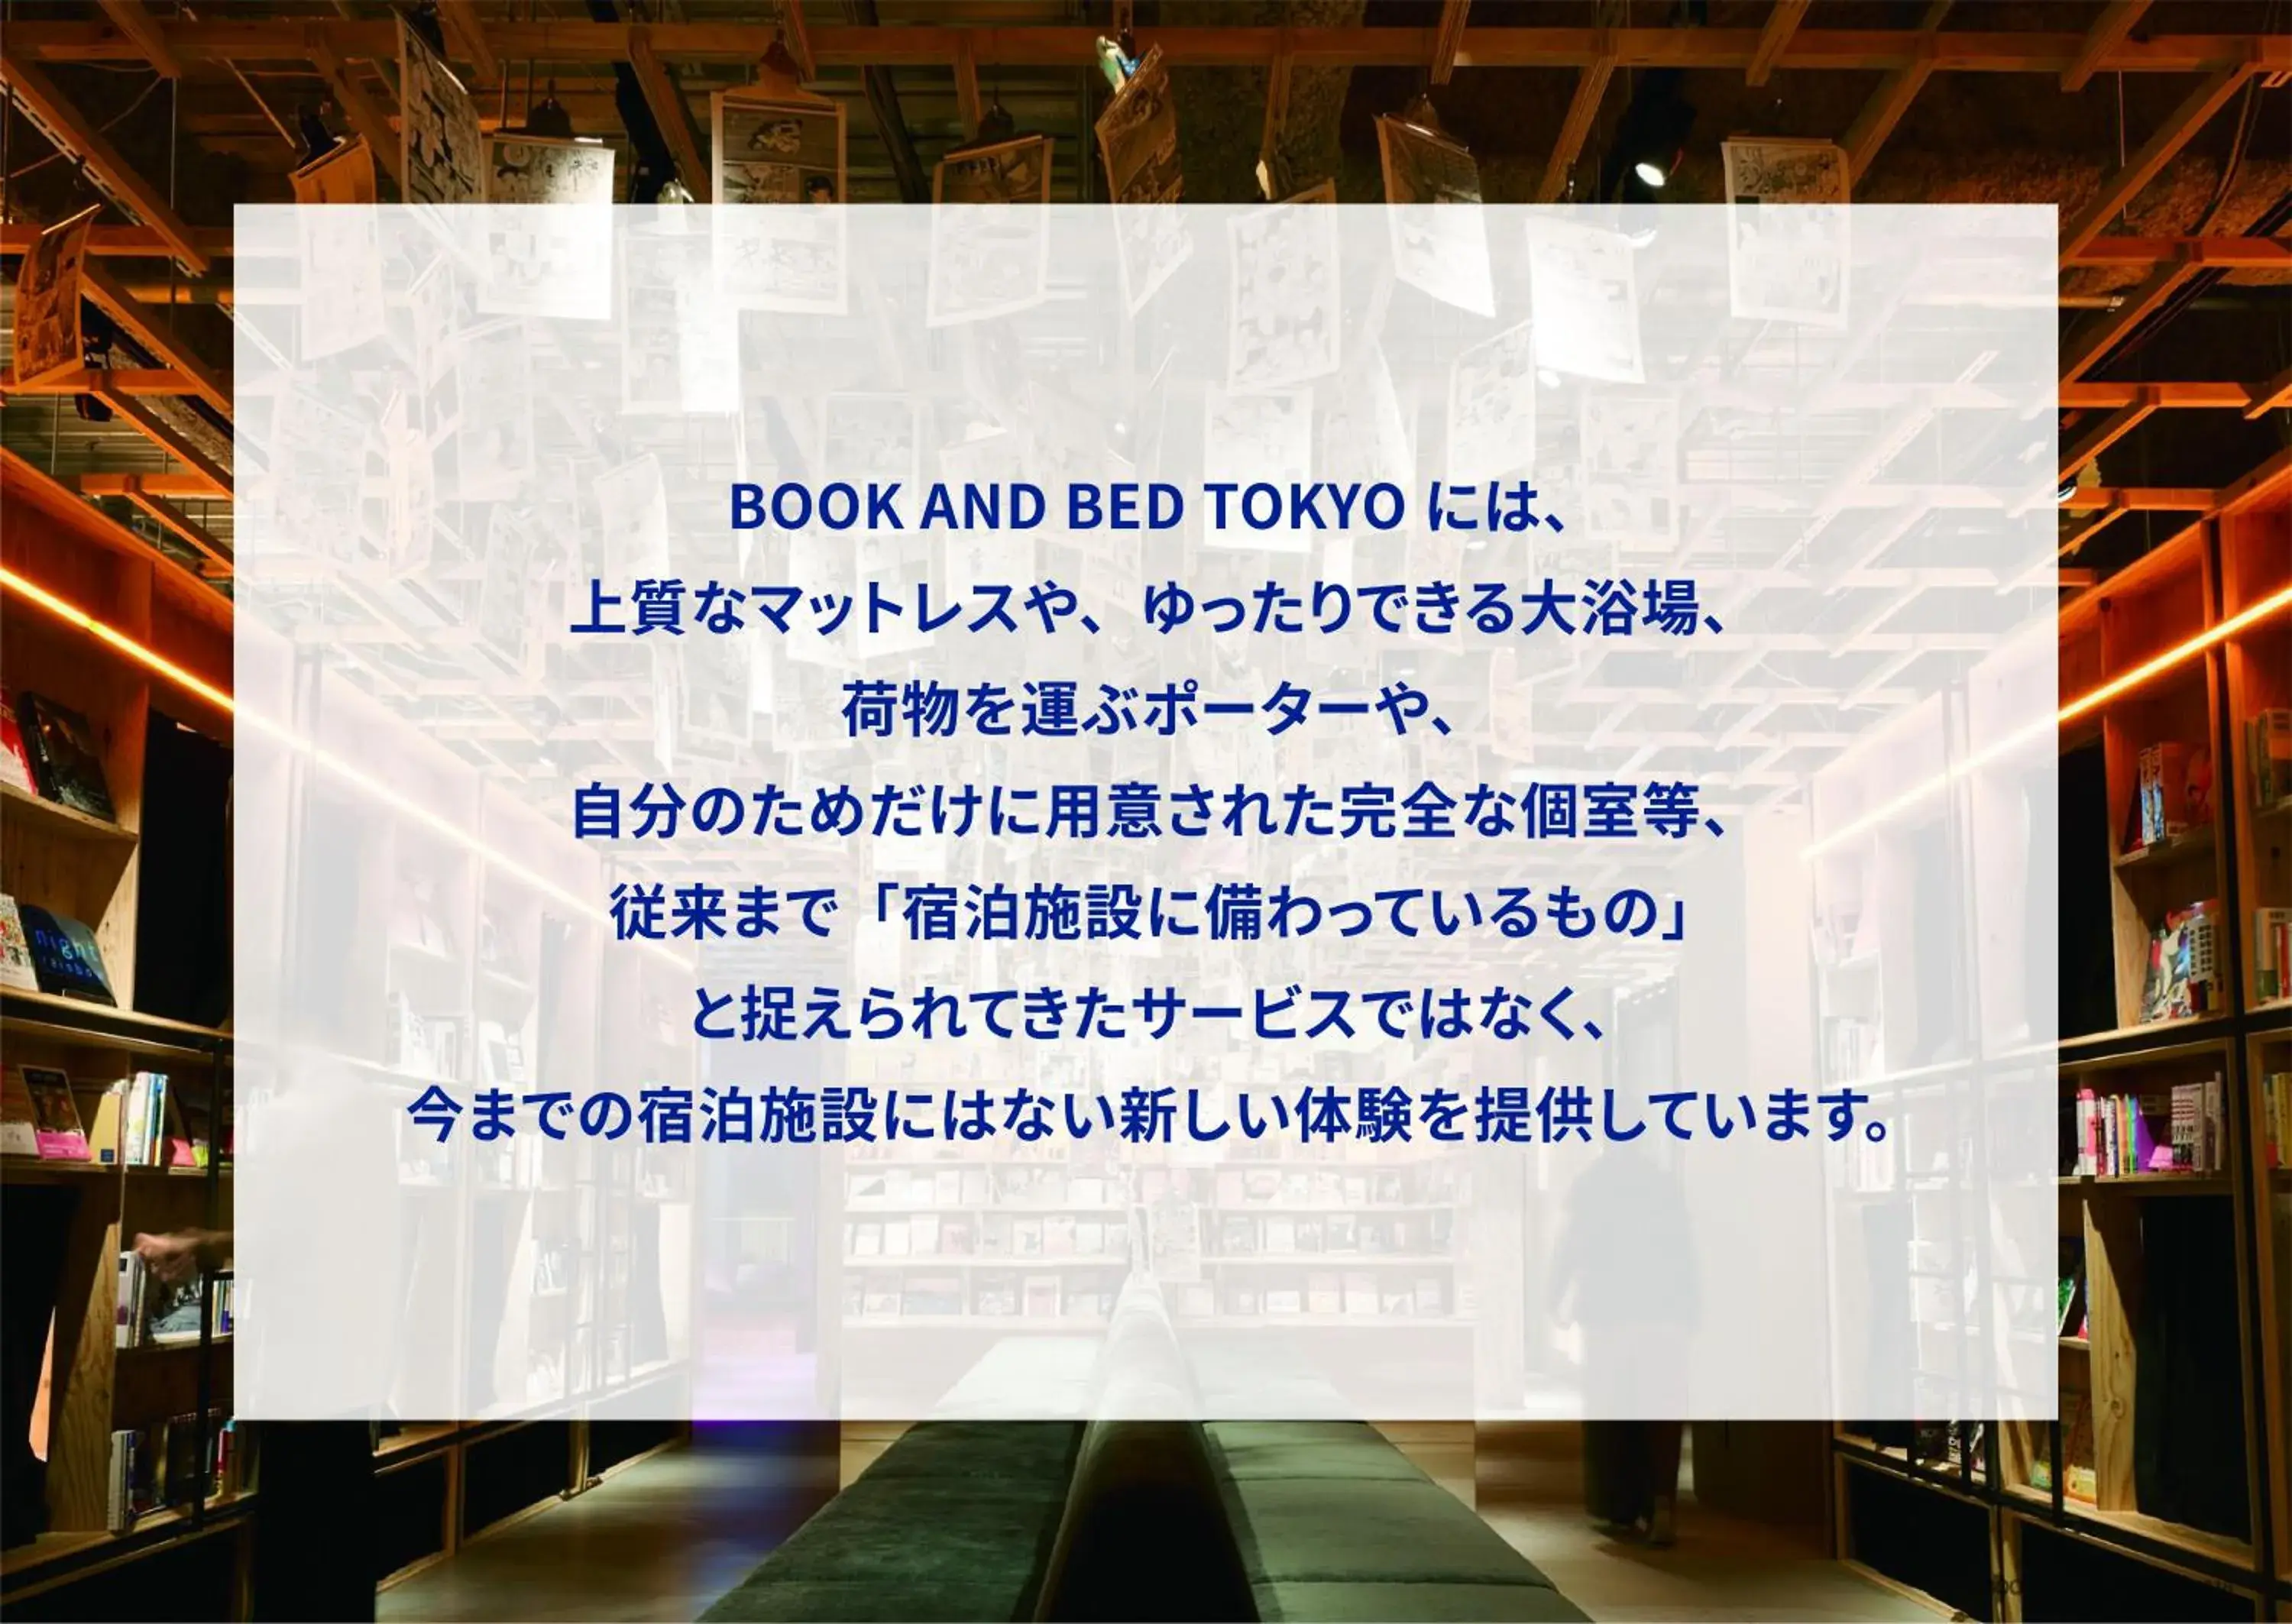 BOOK AND BED TOKYO SHINJUKU